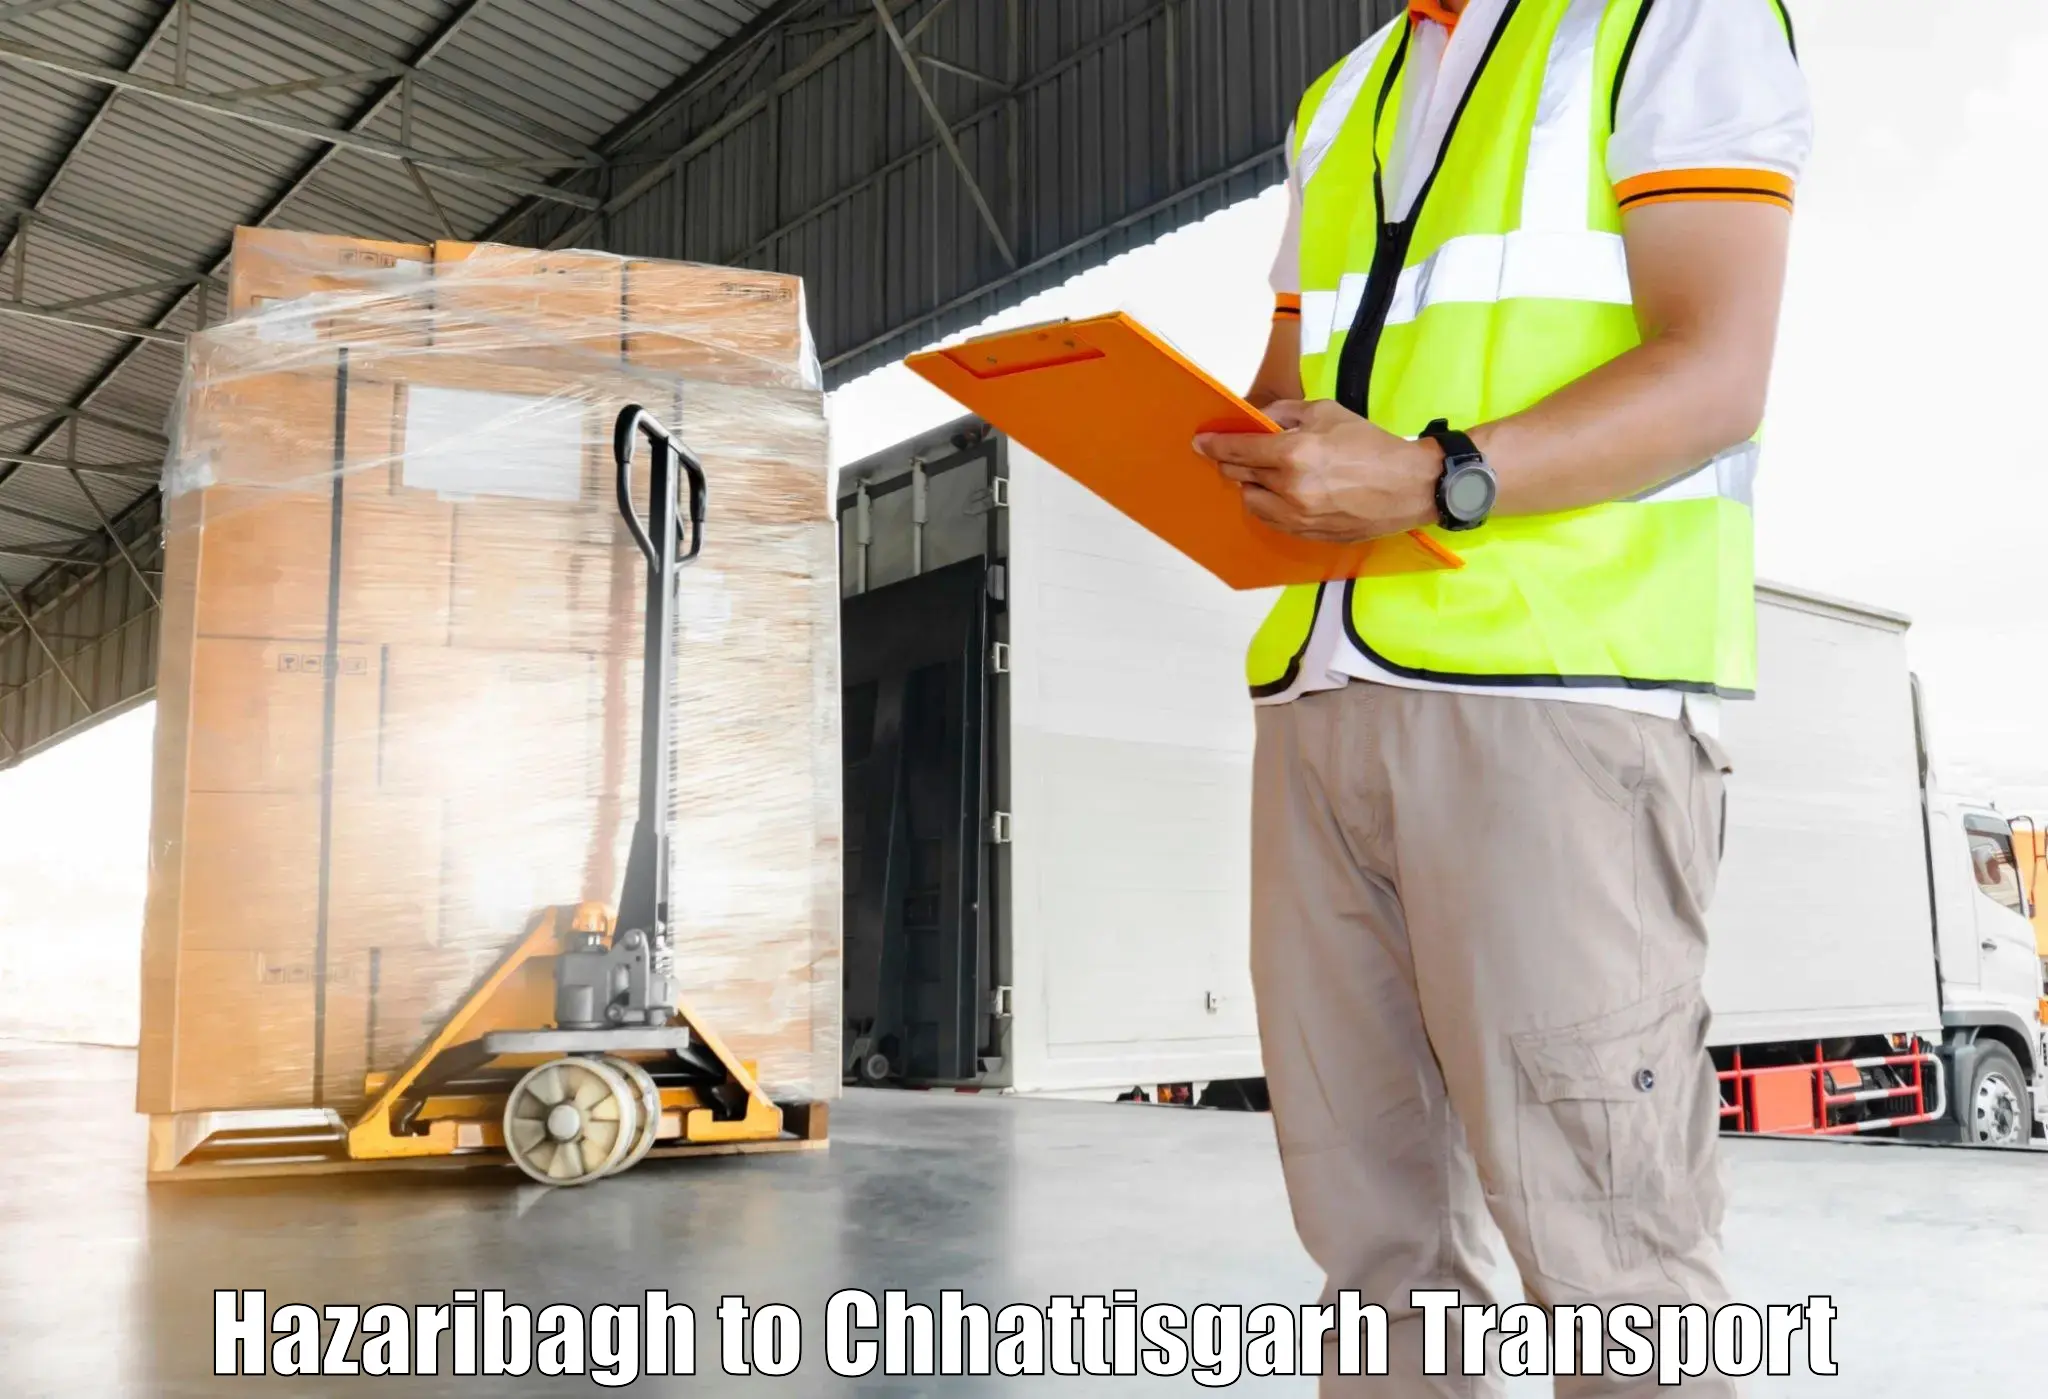 Air freight transport services Hazaribagh to Wadrafnagar